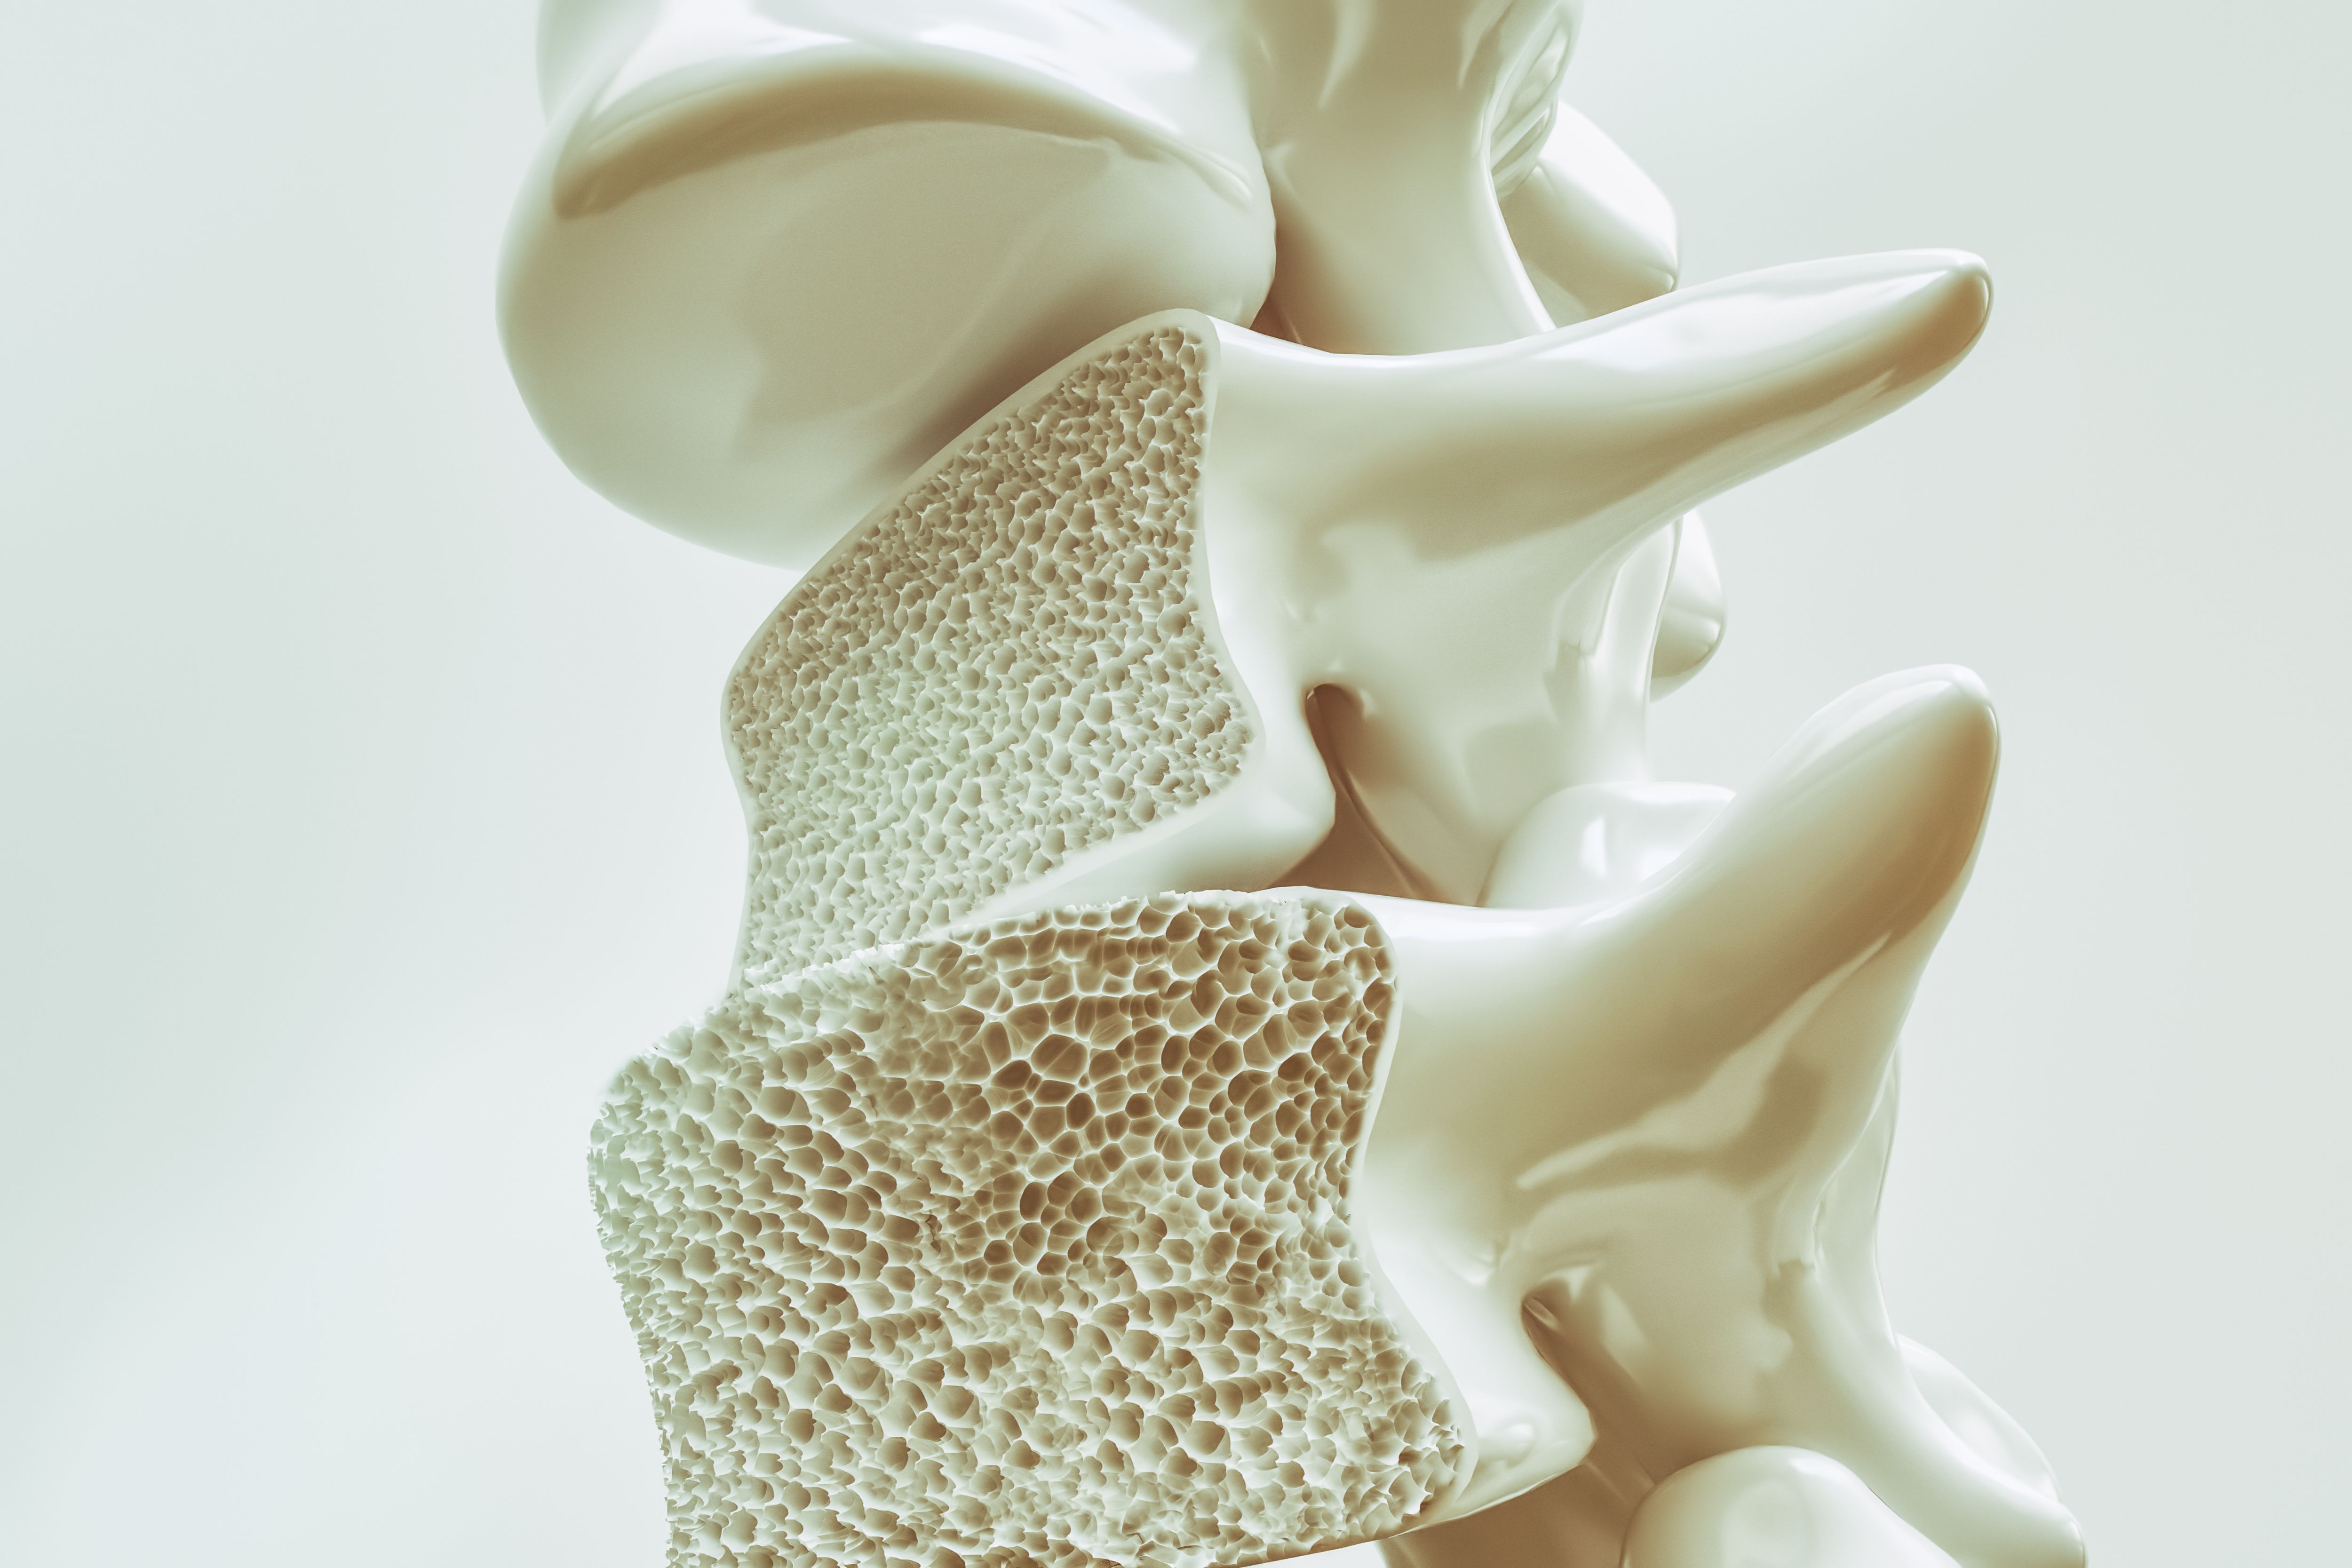 reconstitution d'un os souffrant d'ostéoporose